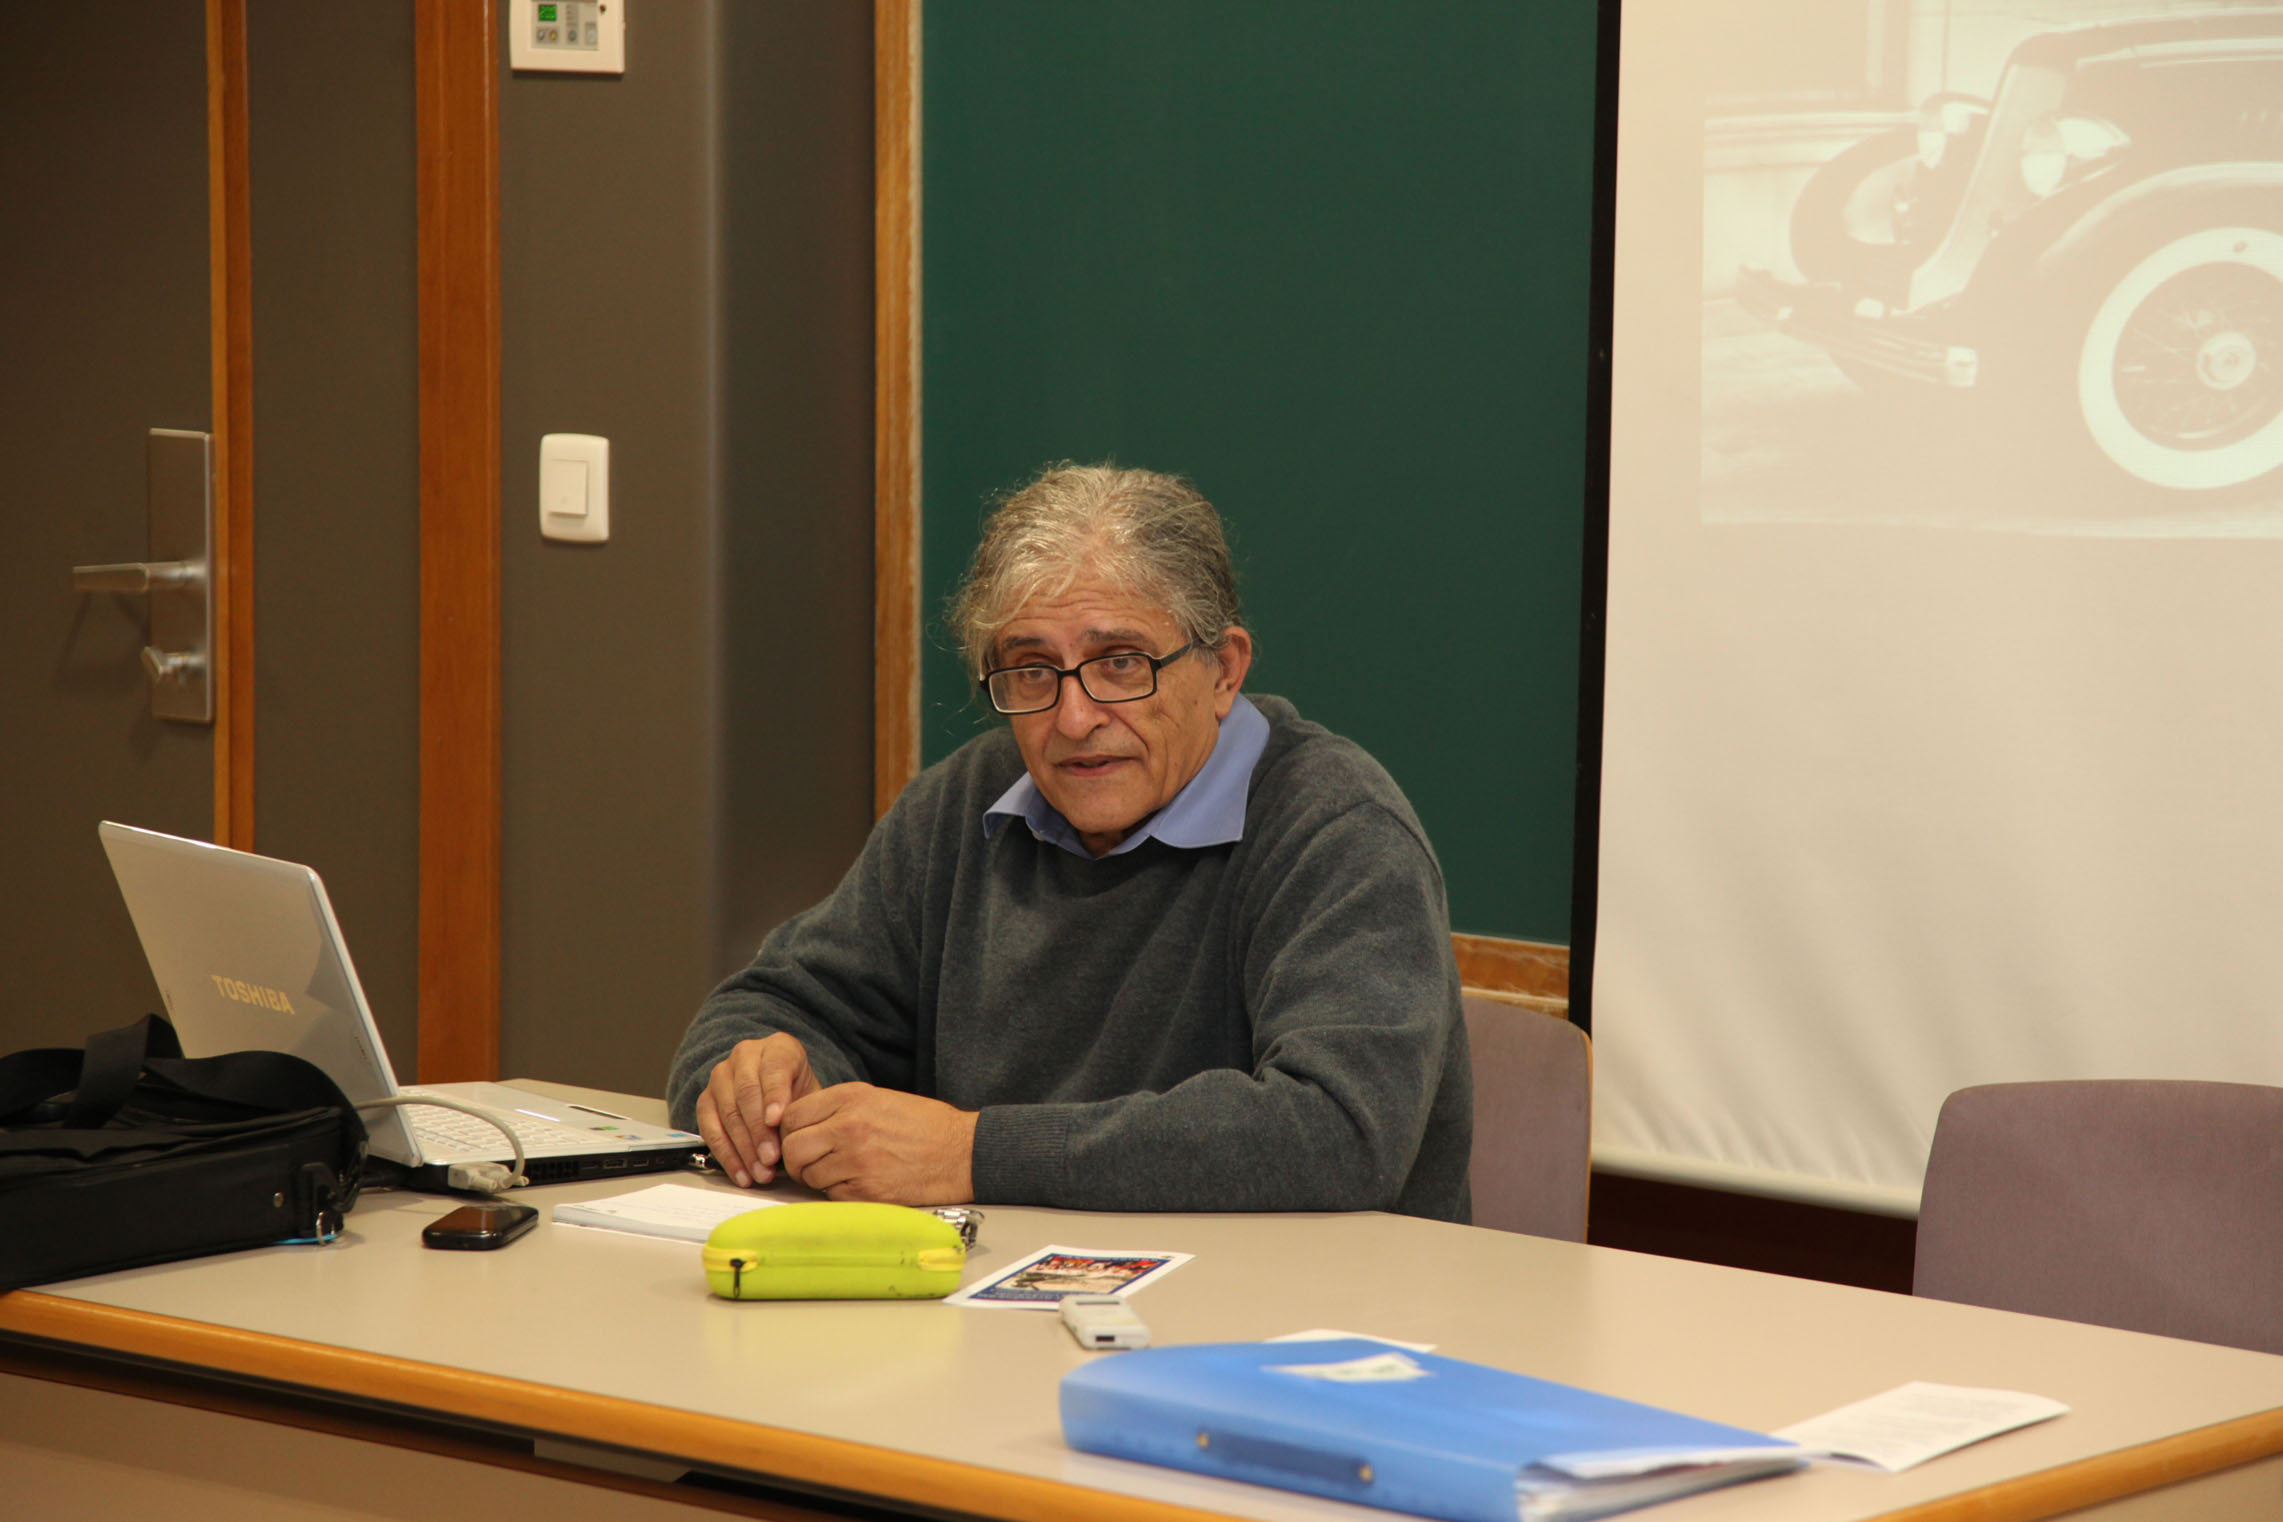 Ramon Cotarelo seminario CEU UCH